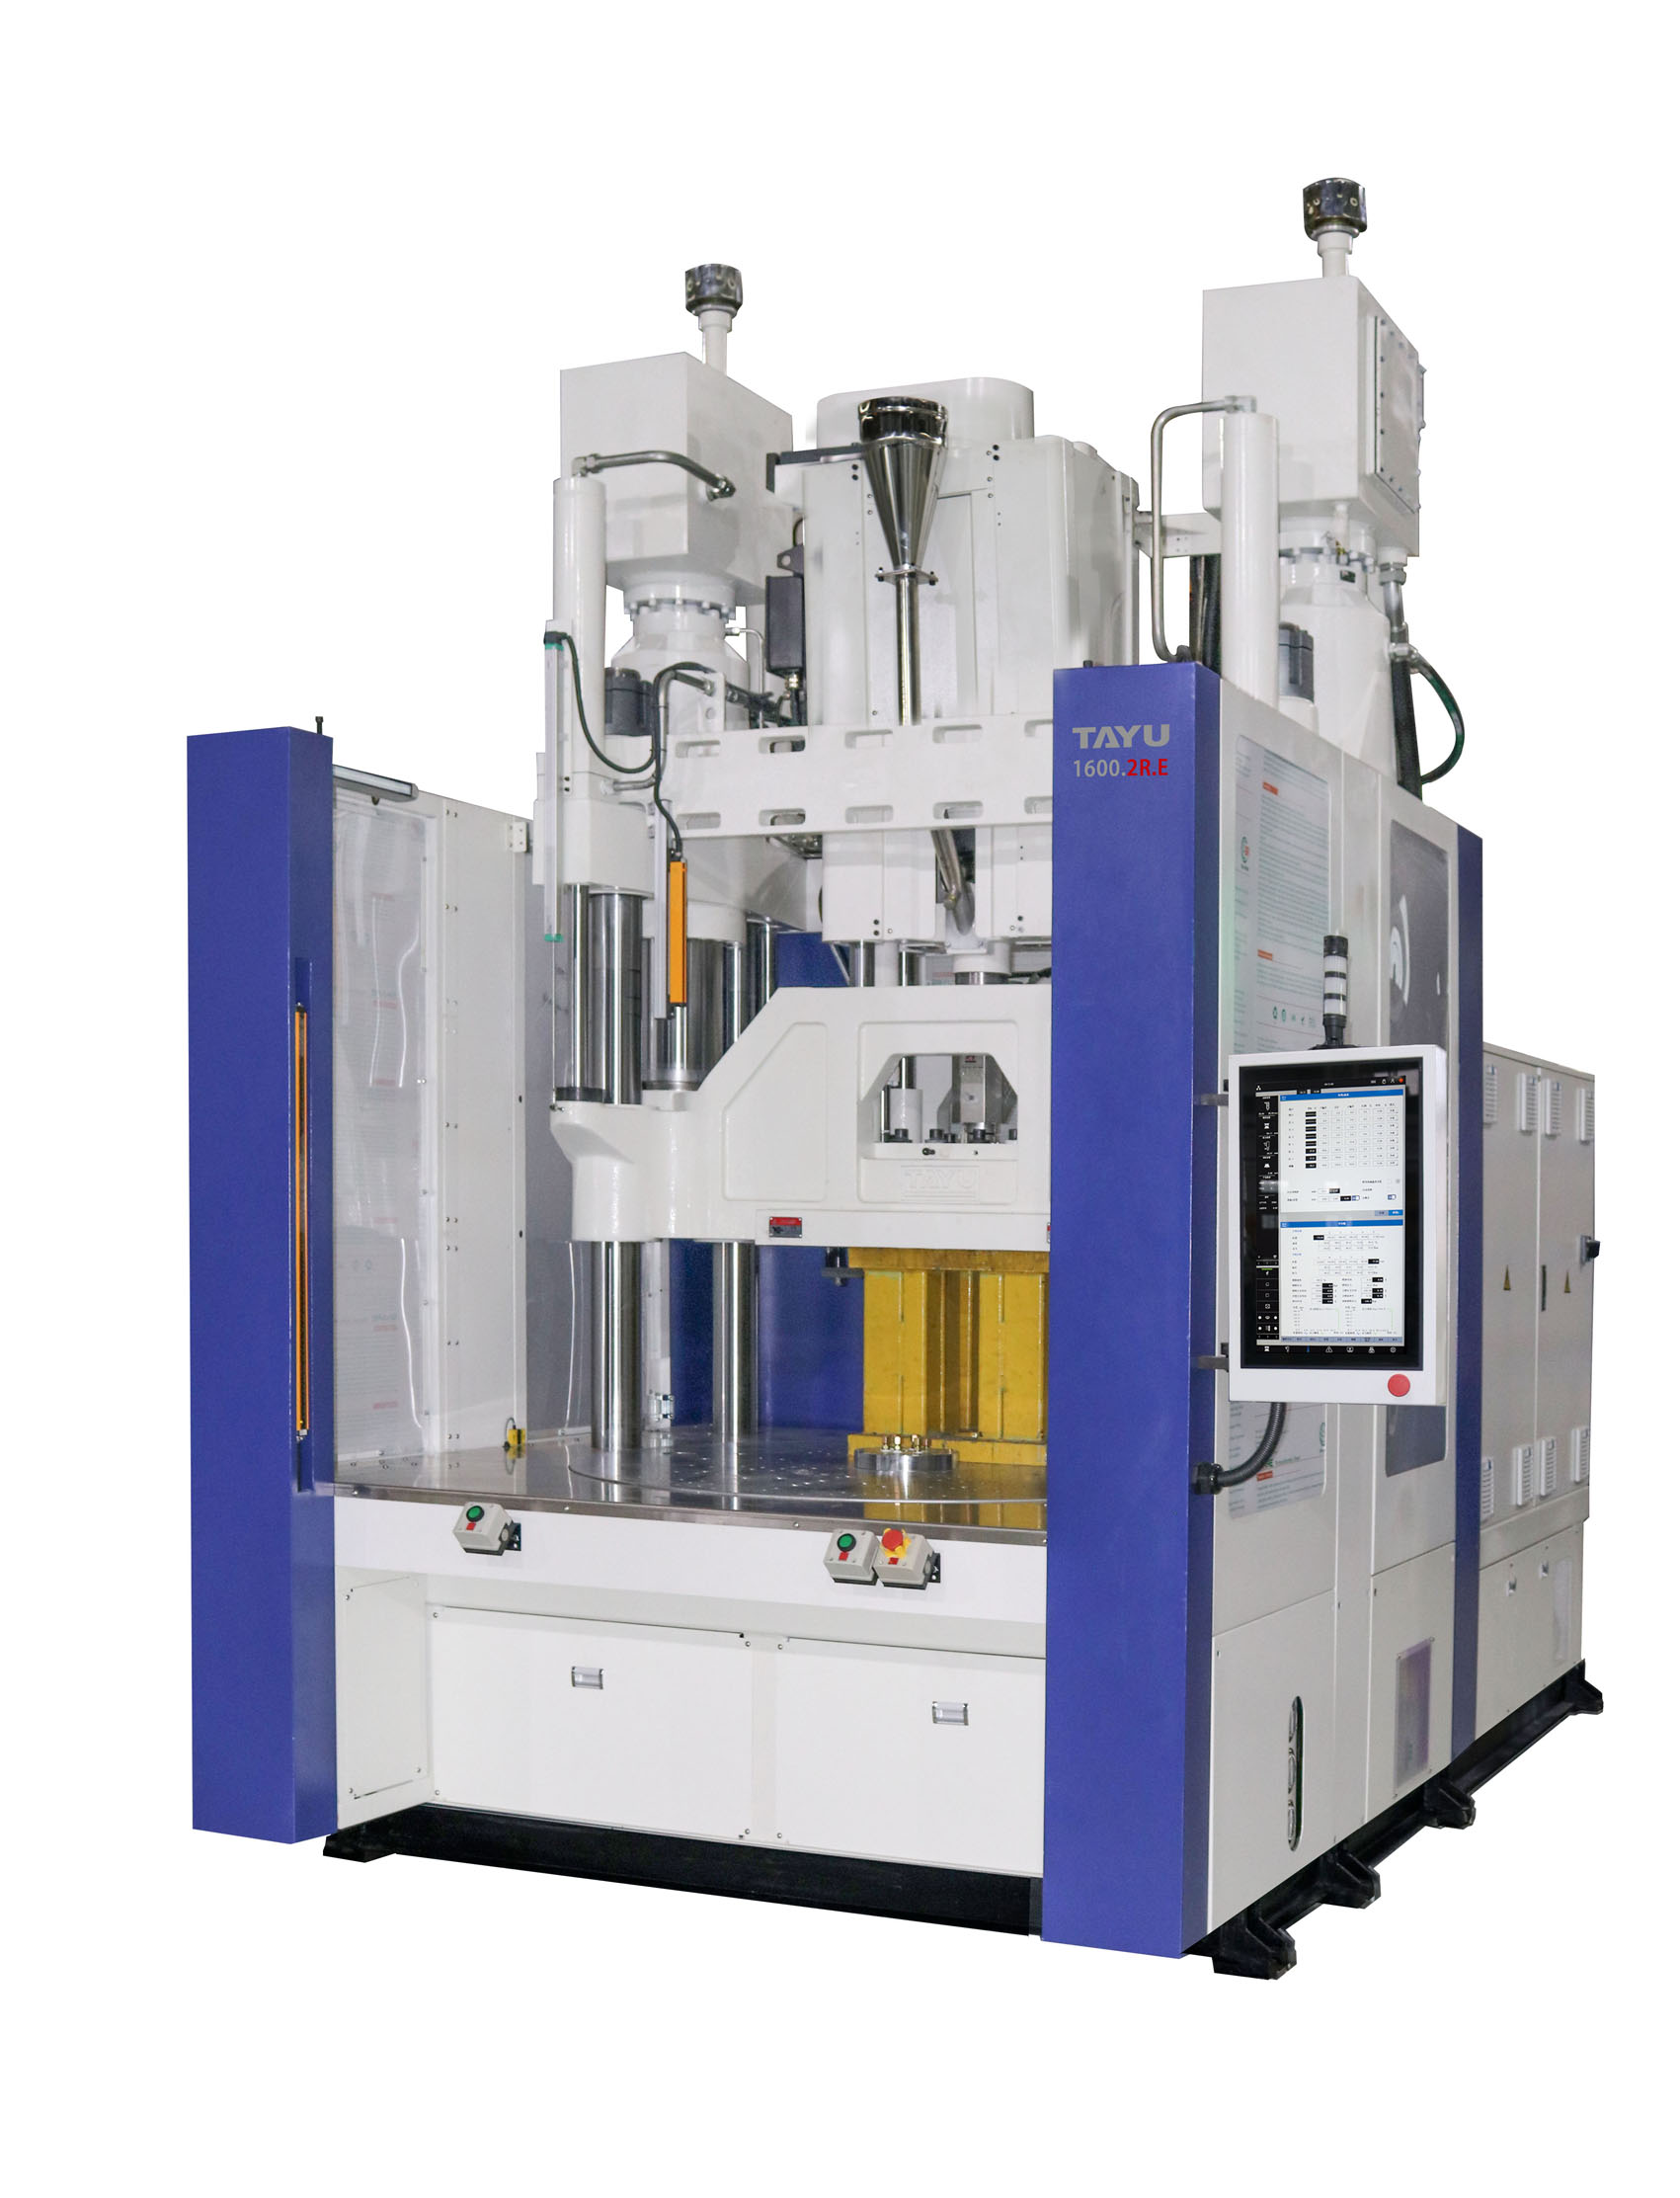 HETU-1600.2R vertical injection molding machine